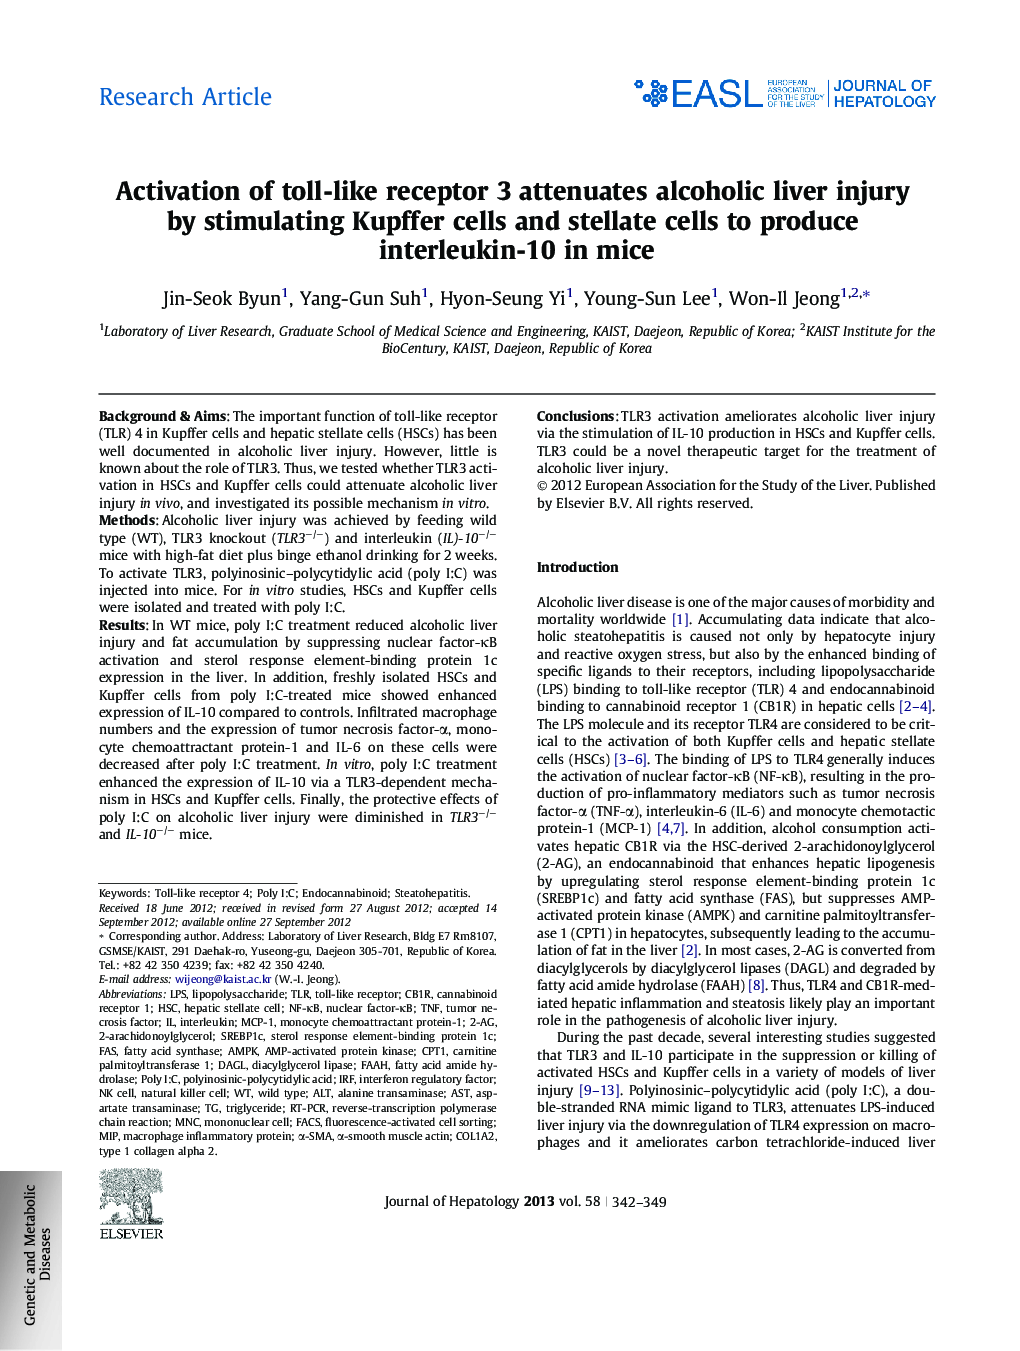 مقاله پژوهشی فعال سازی گیرنده عوارض جانبی 3 باعث آسیب زدن به کبد الکلی با تحریک سلول های کوپفر و ستاره های ستون برای تولید اینترلوکین -10 در موش 